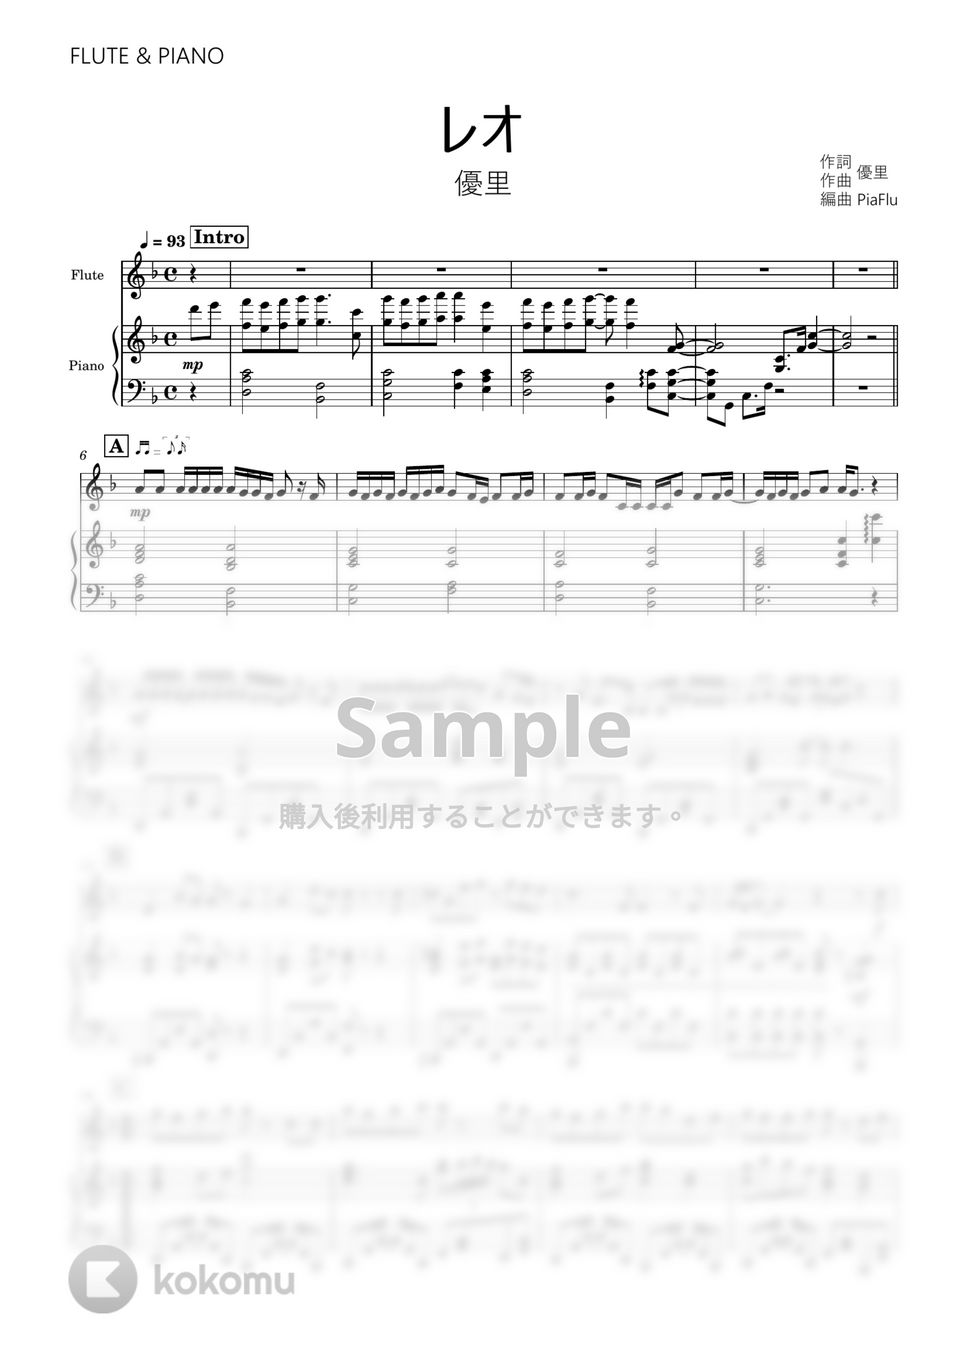 優里 - レオ (フルート&ピアノ伴奏) by PiaFlu